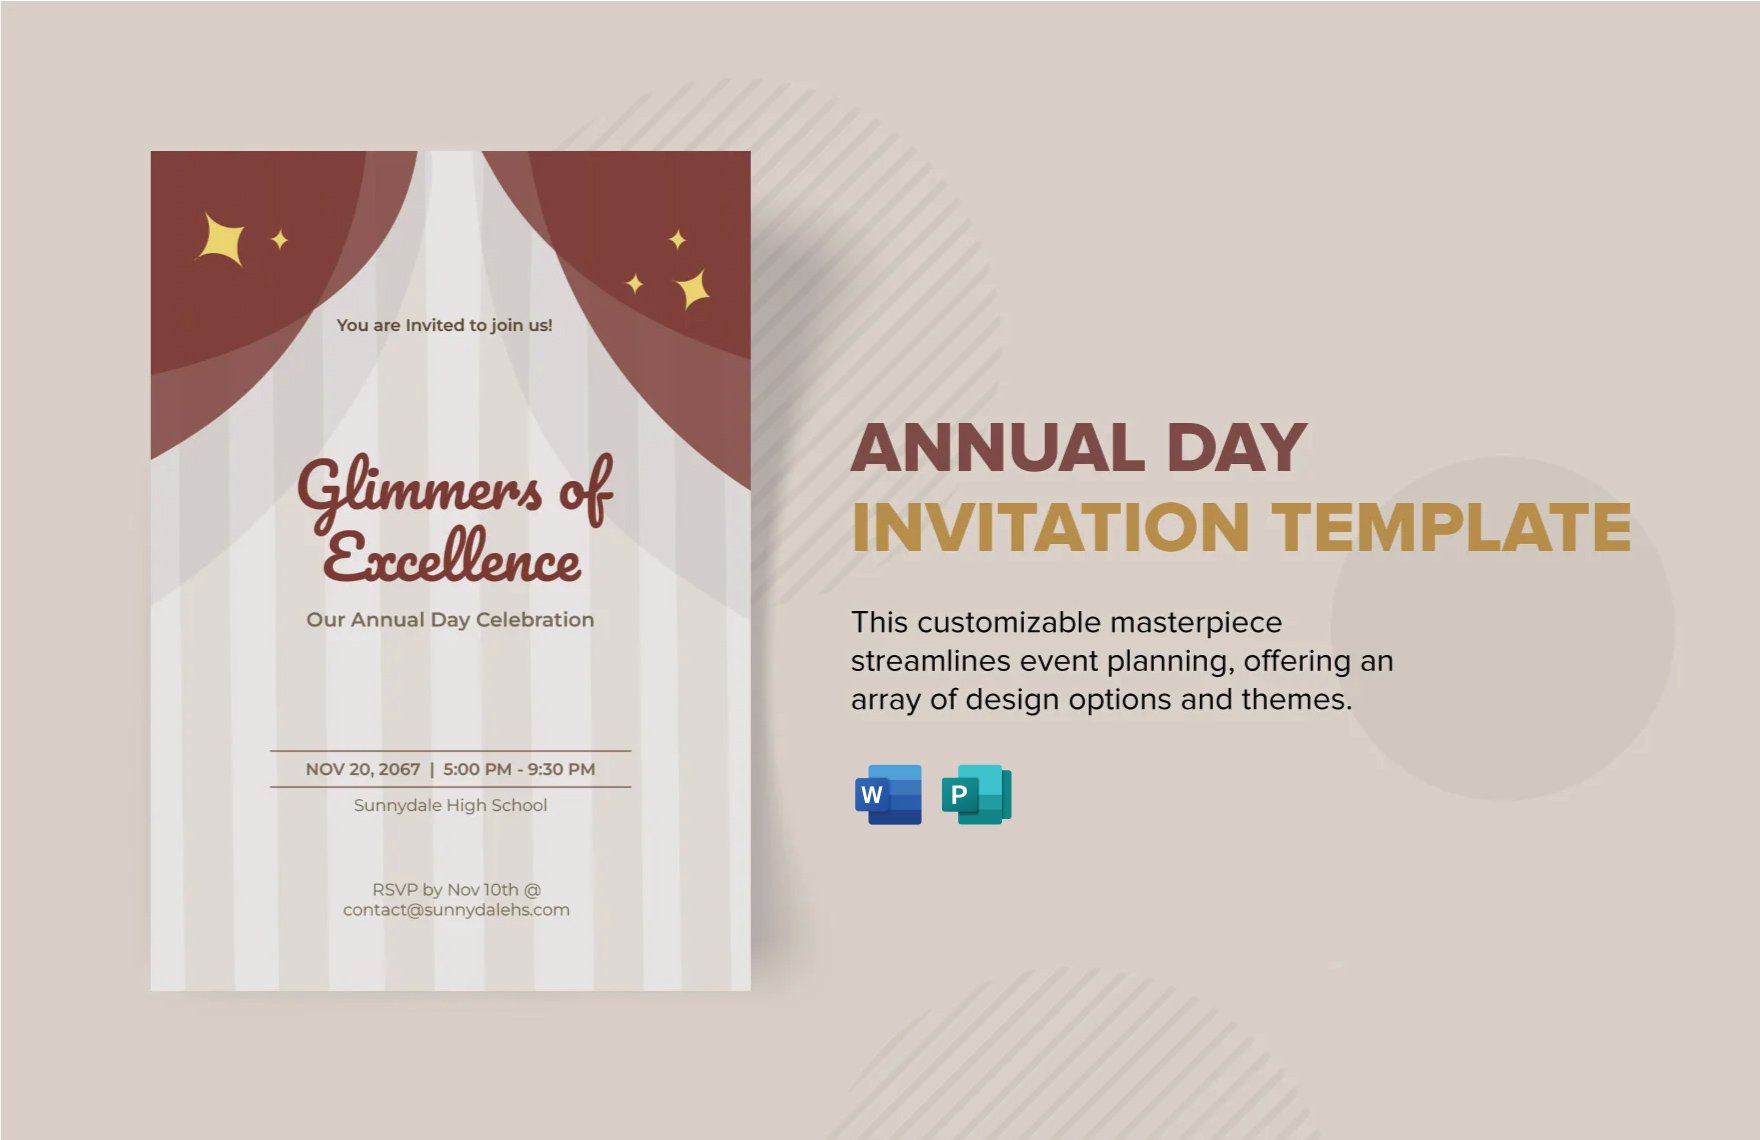 Annual Day Invitation Template